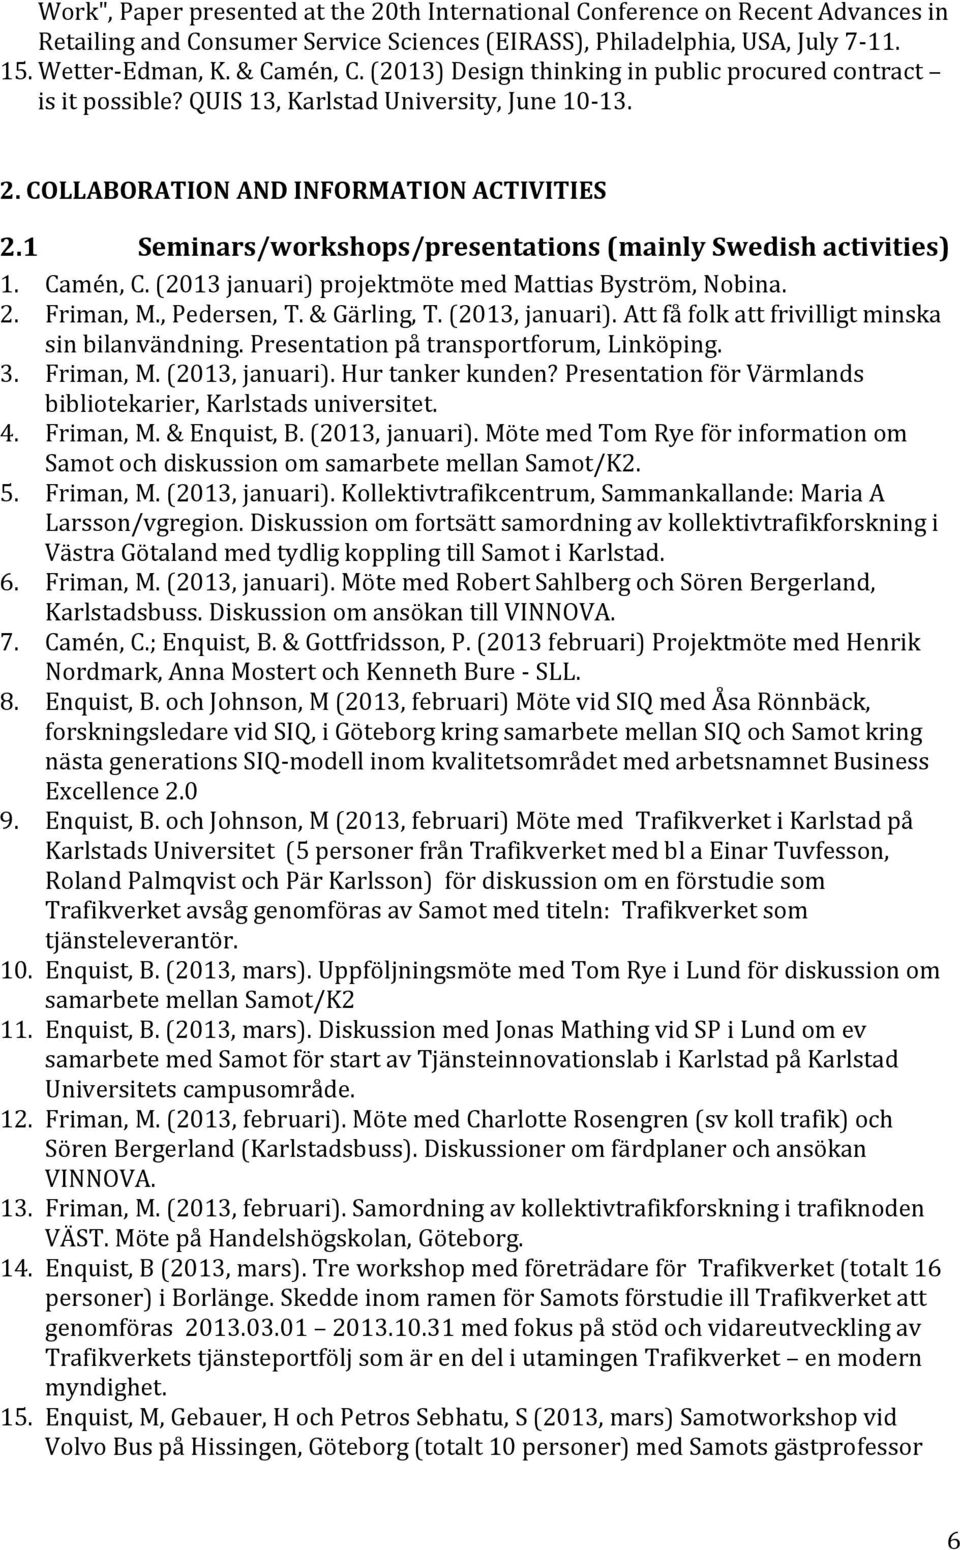 1 Seminars/workshops/presentations (mainly Swedish activities) 1. Camén, C. (2013 januari) projektmöte med Mattias Byström, Nobina. 2. Friman, M., Pedersen, T. & Gärling, T. (2013, januari).